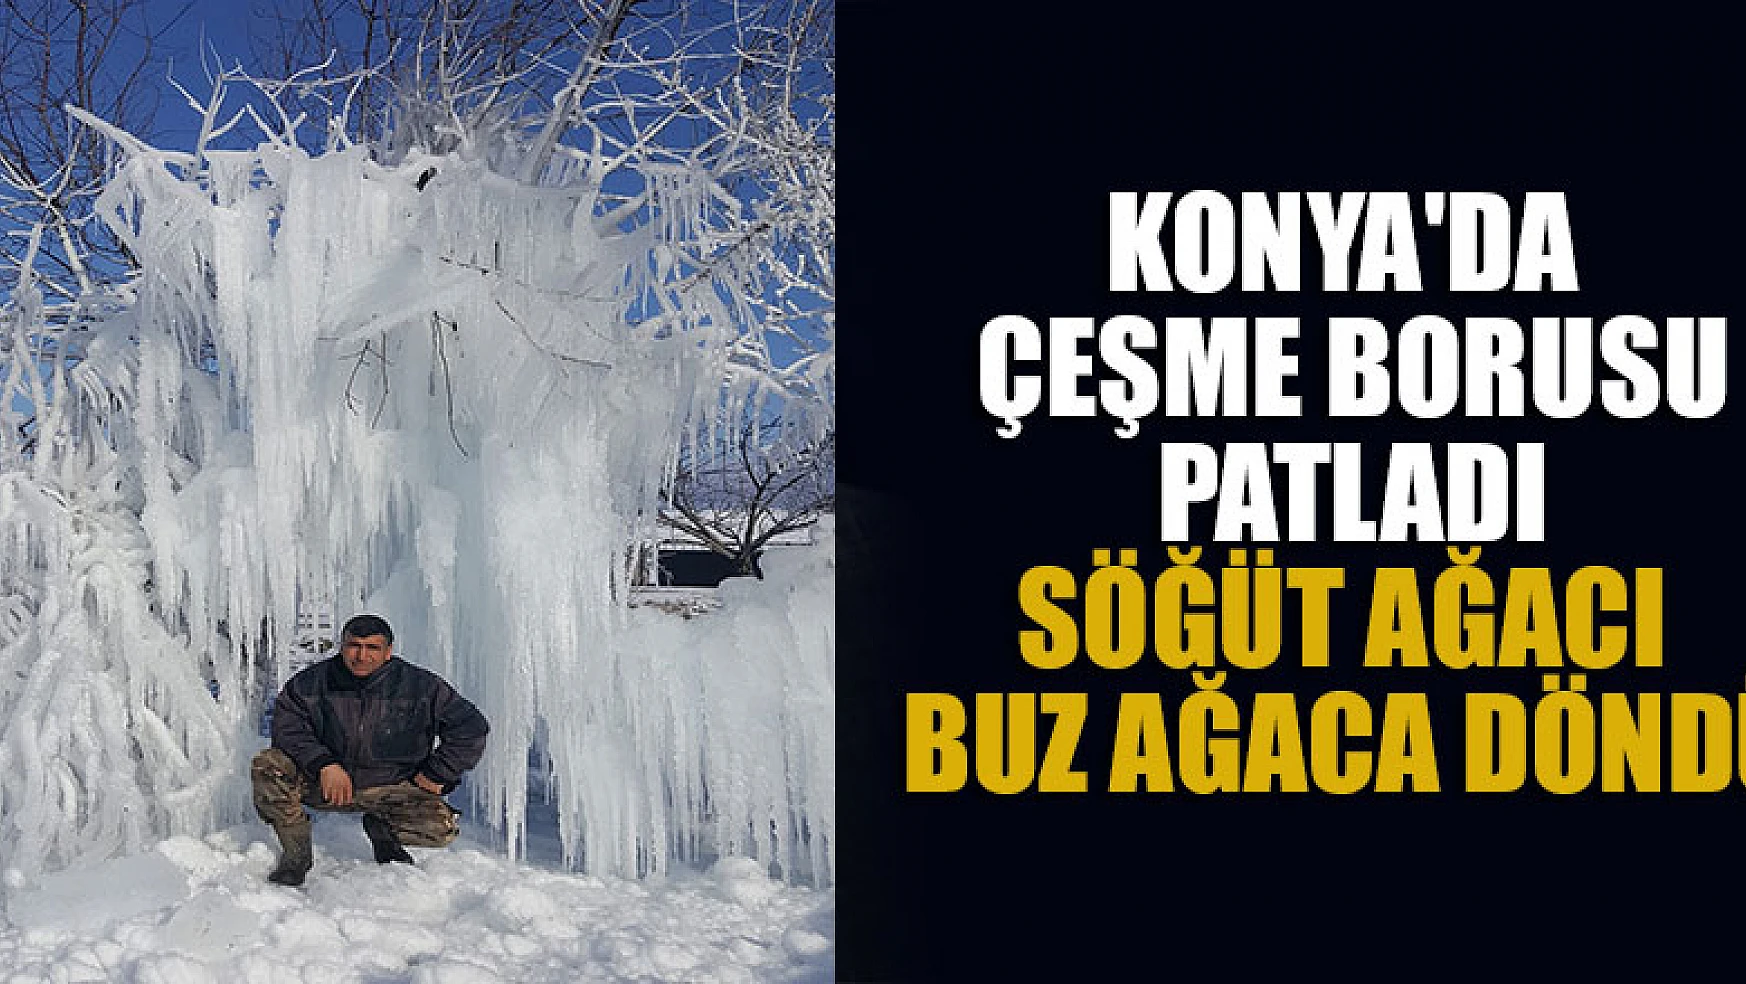 Konya'da çeşme borusu patladı söğüt ağacı buz ağaca döndü